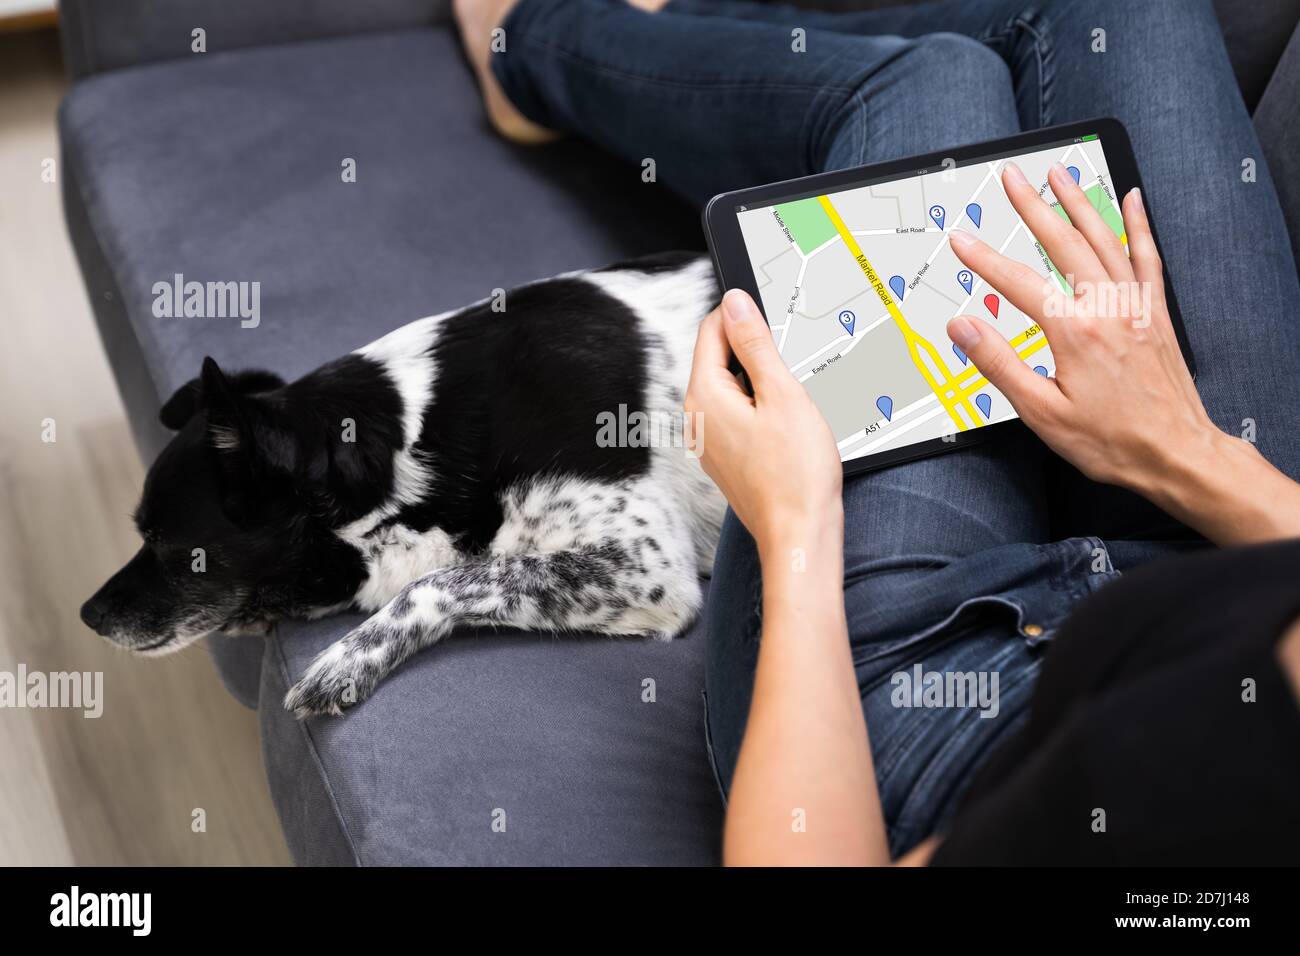 Maintien de la carte du navigateur GPS sur la tablette avec chien PET Banque D'Images